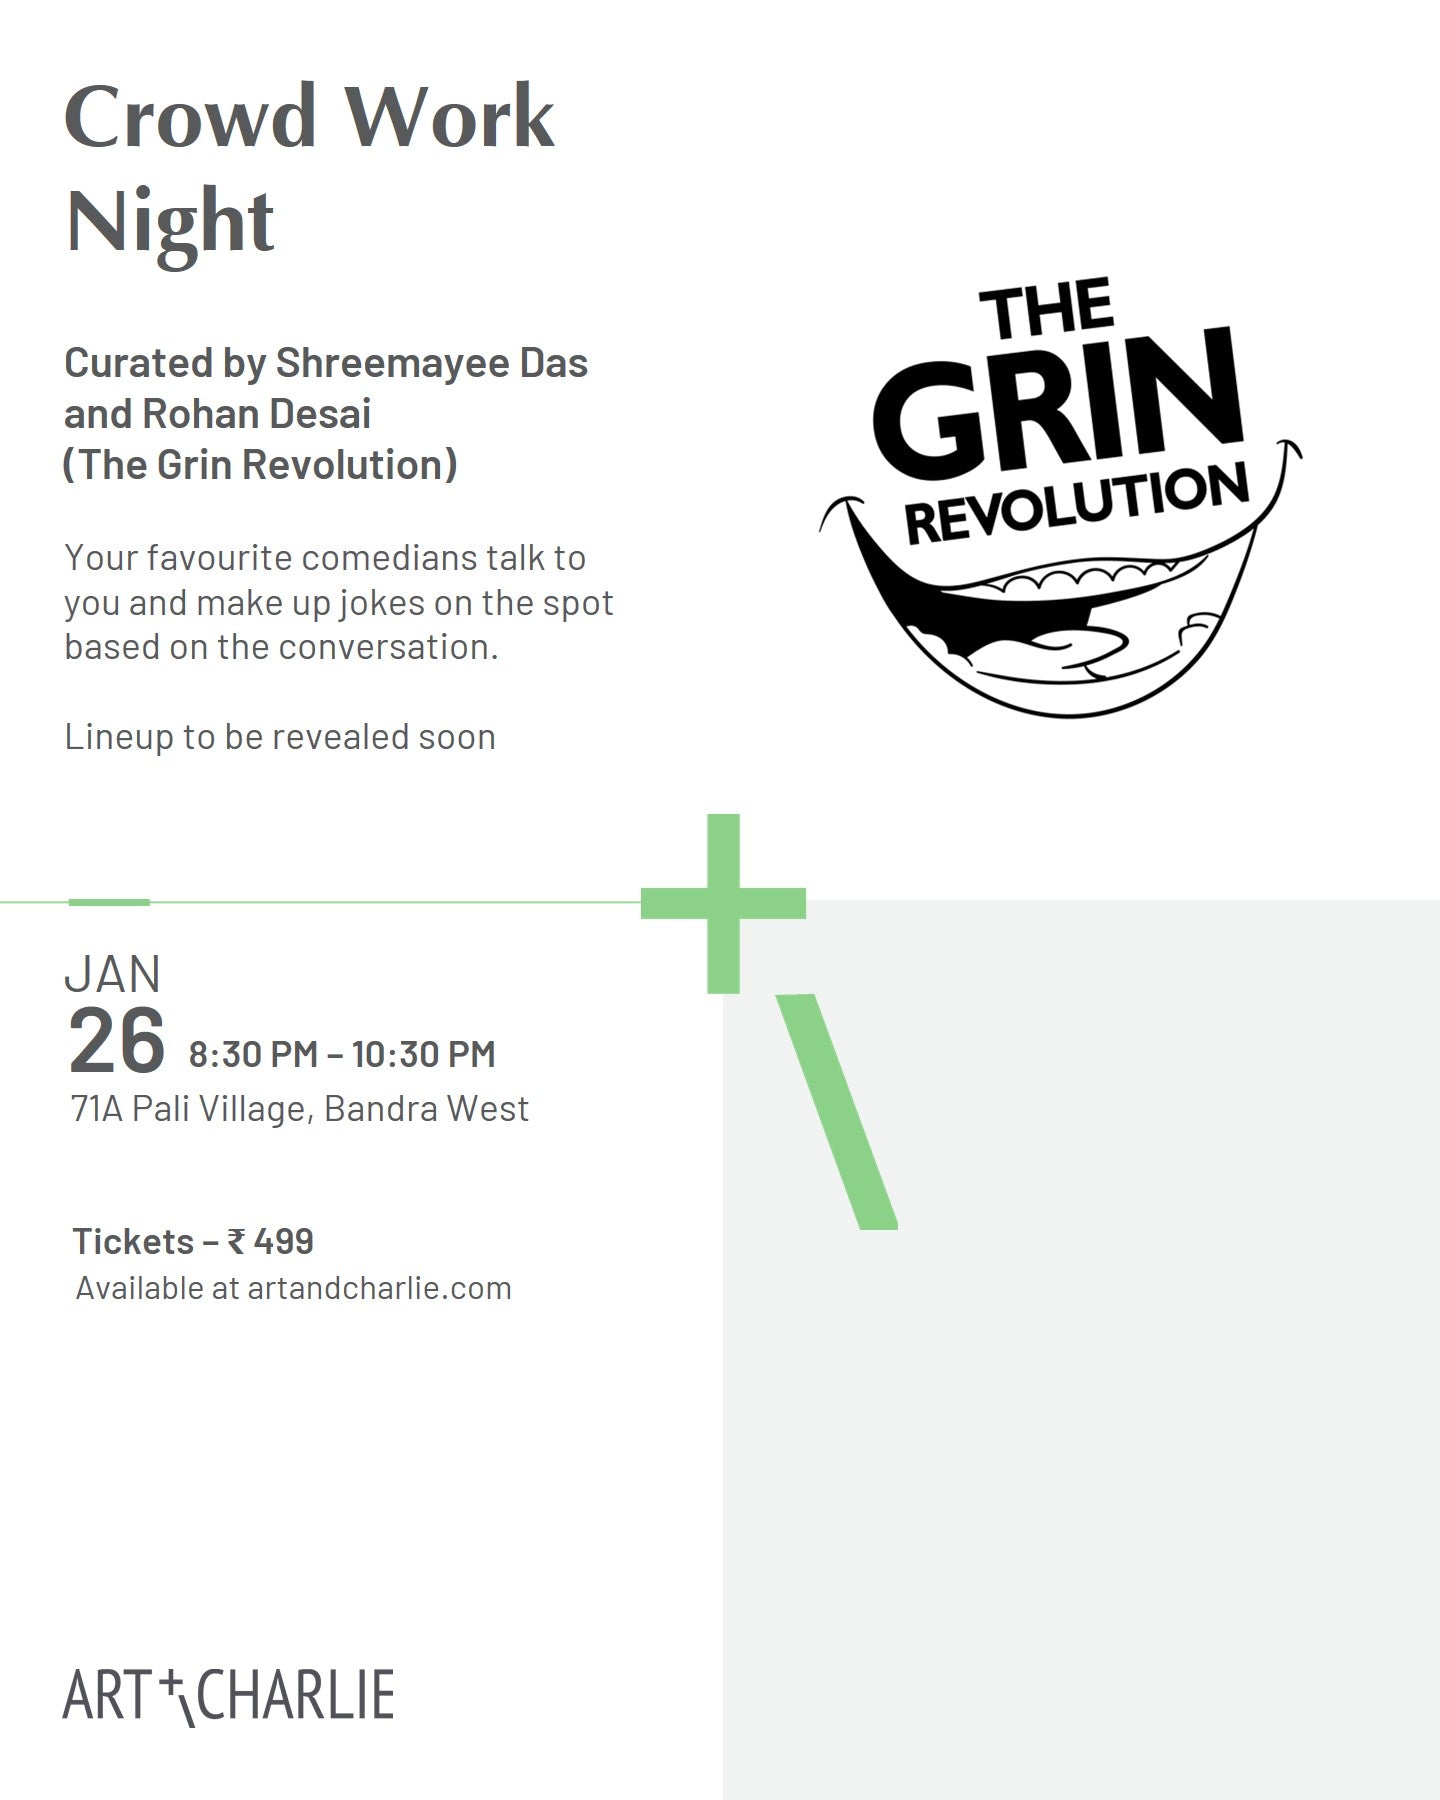 Ticket - Crowd Work Night - The Grin Revolution - 26 Jan